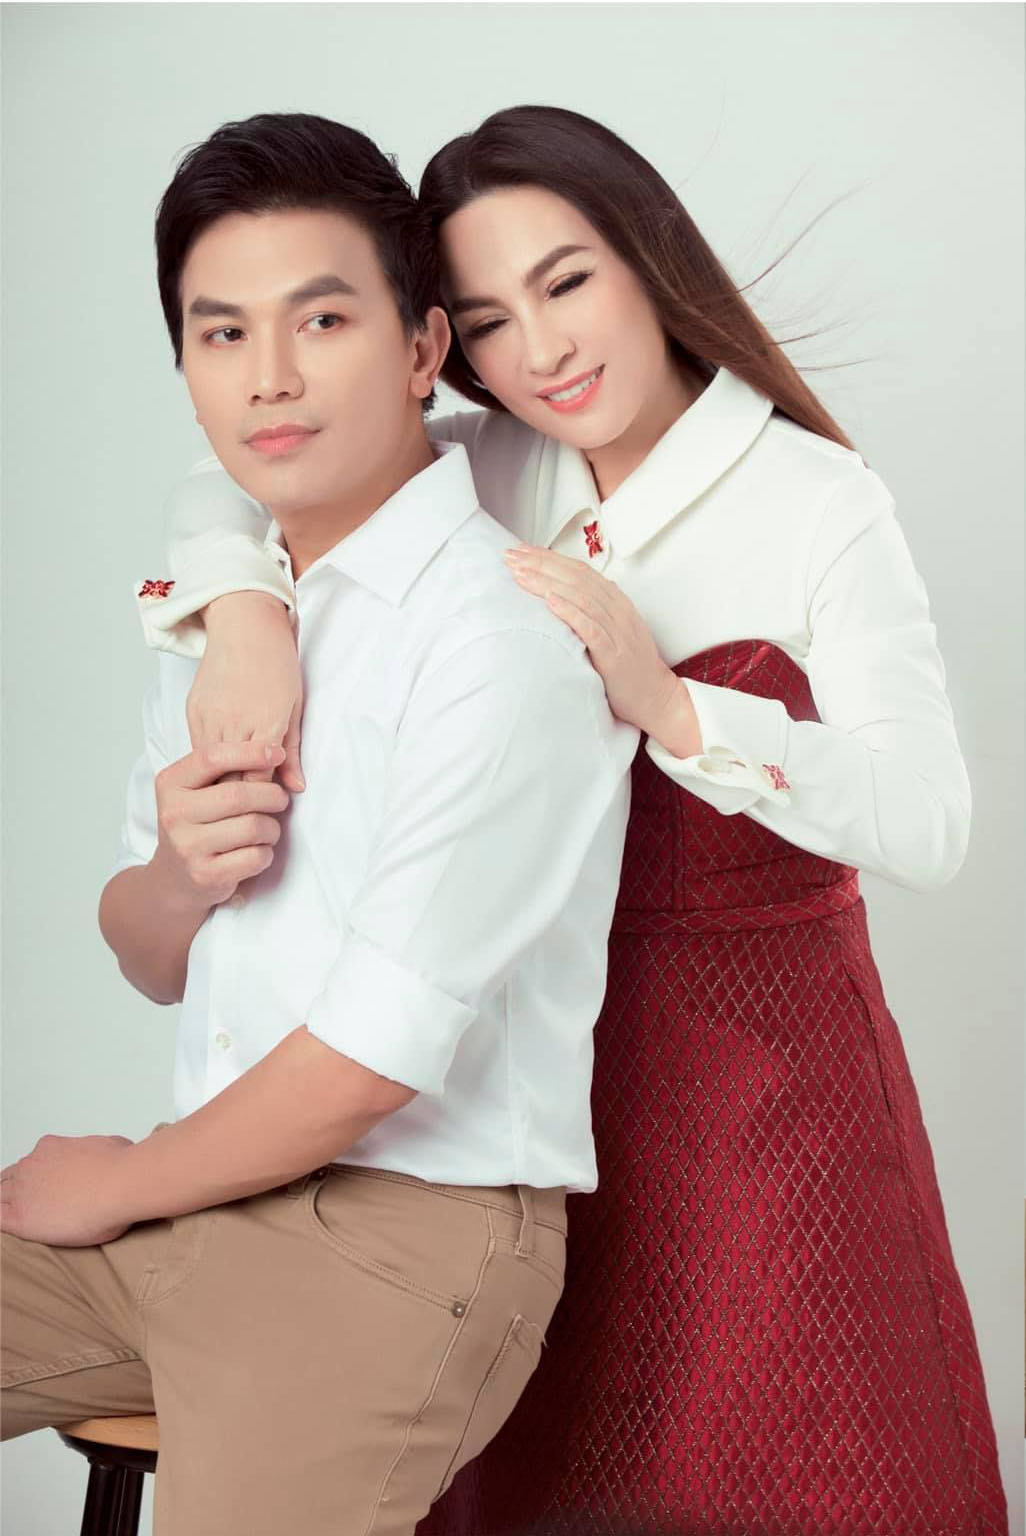 Phi Nhung và Mạnh Quỳnh là cặp đôi hai ca sĩ nổi tiếng trong làng nhạc Việt. Không chỉ trên sân khấu, họ còn là đôi tình nhân đáng yêu ngoài đời. Những hình ảnh tình tứ giữa hai người sẽ khiến ai nấy đều phải xao xuyến và cảm thấy ấm áp.